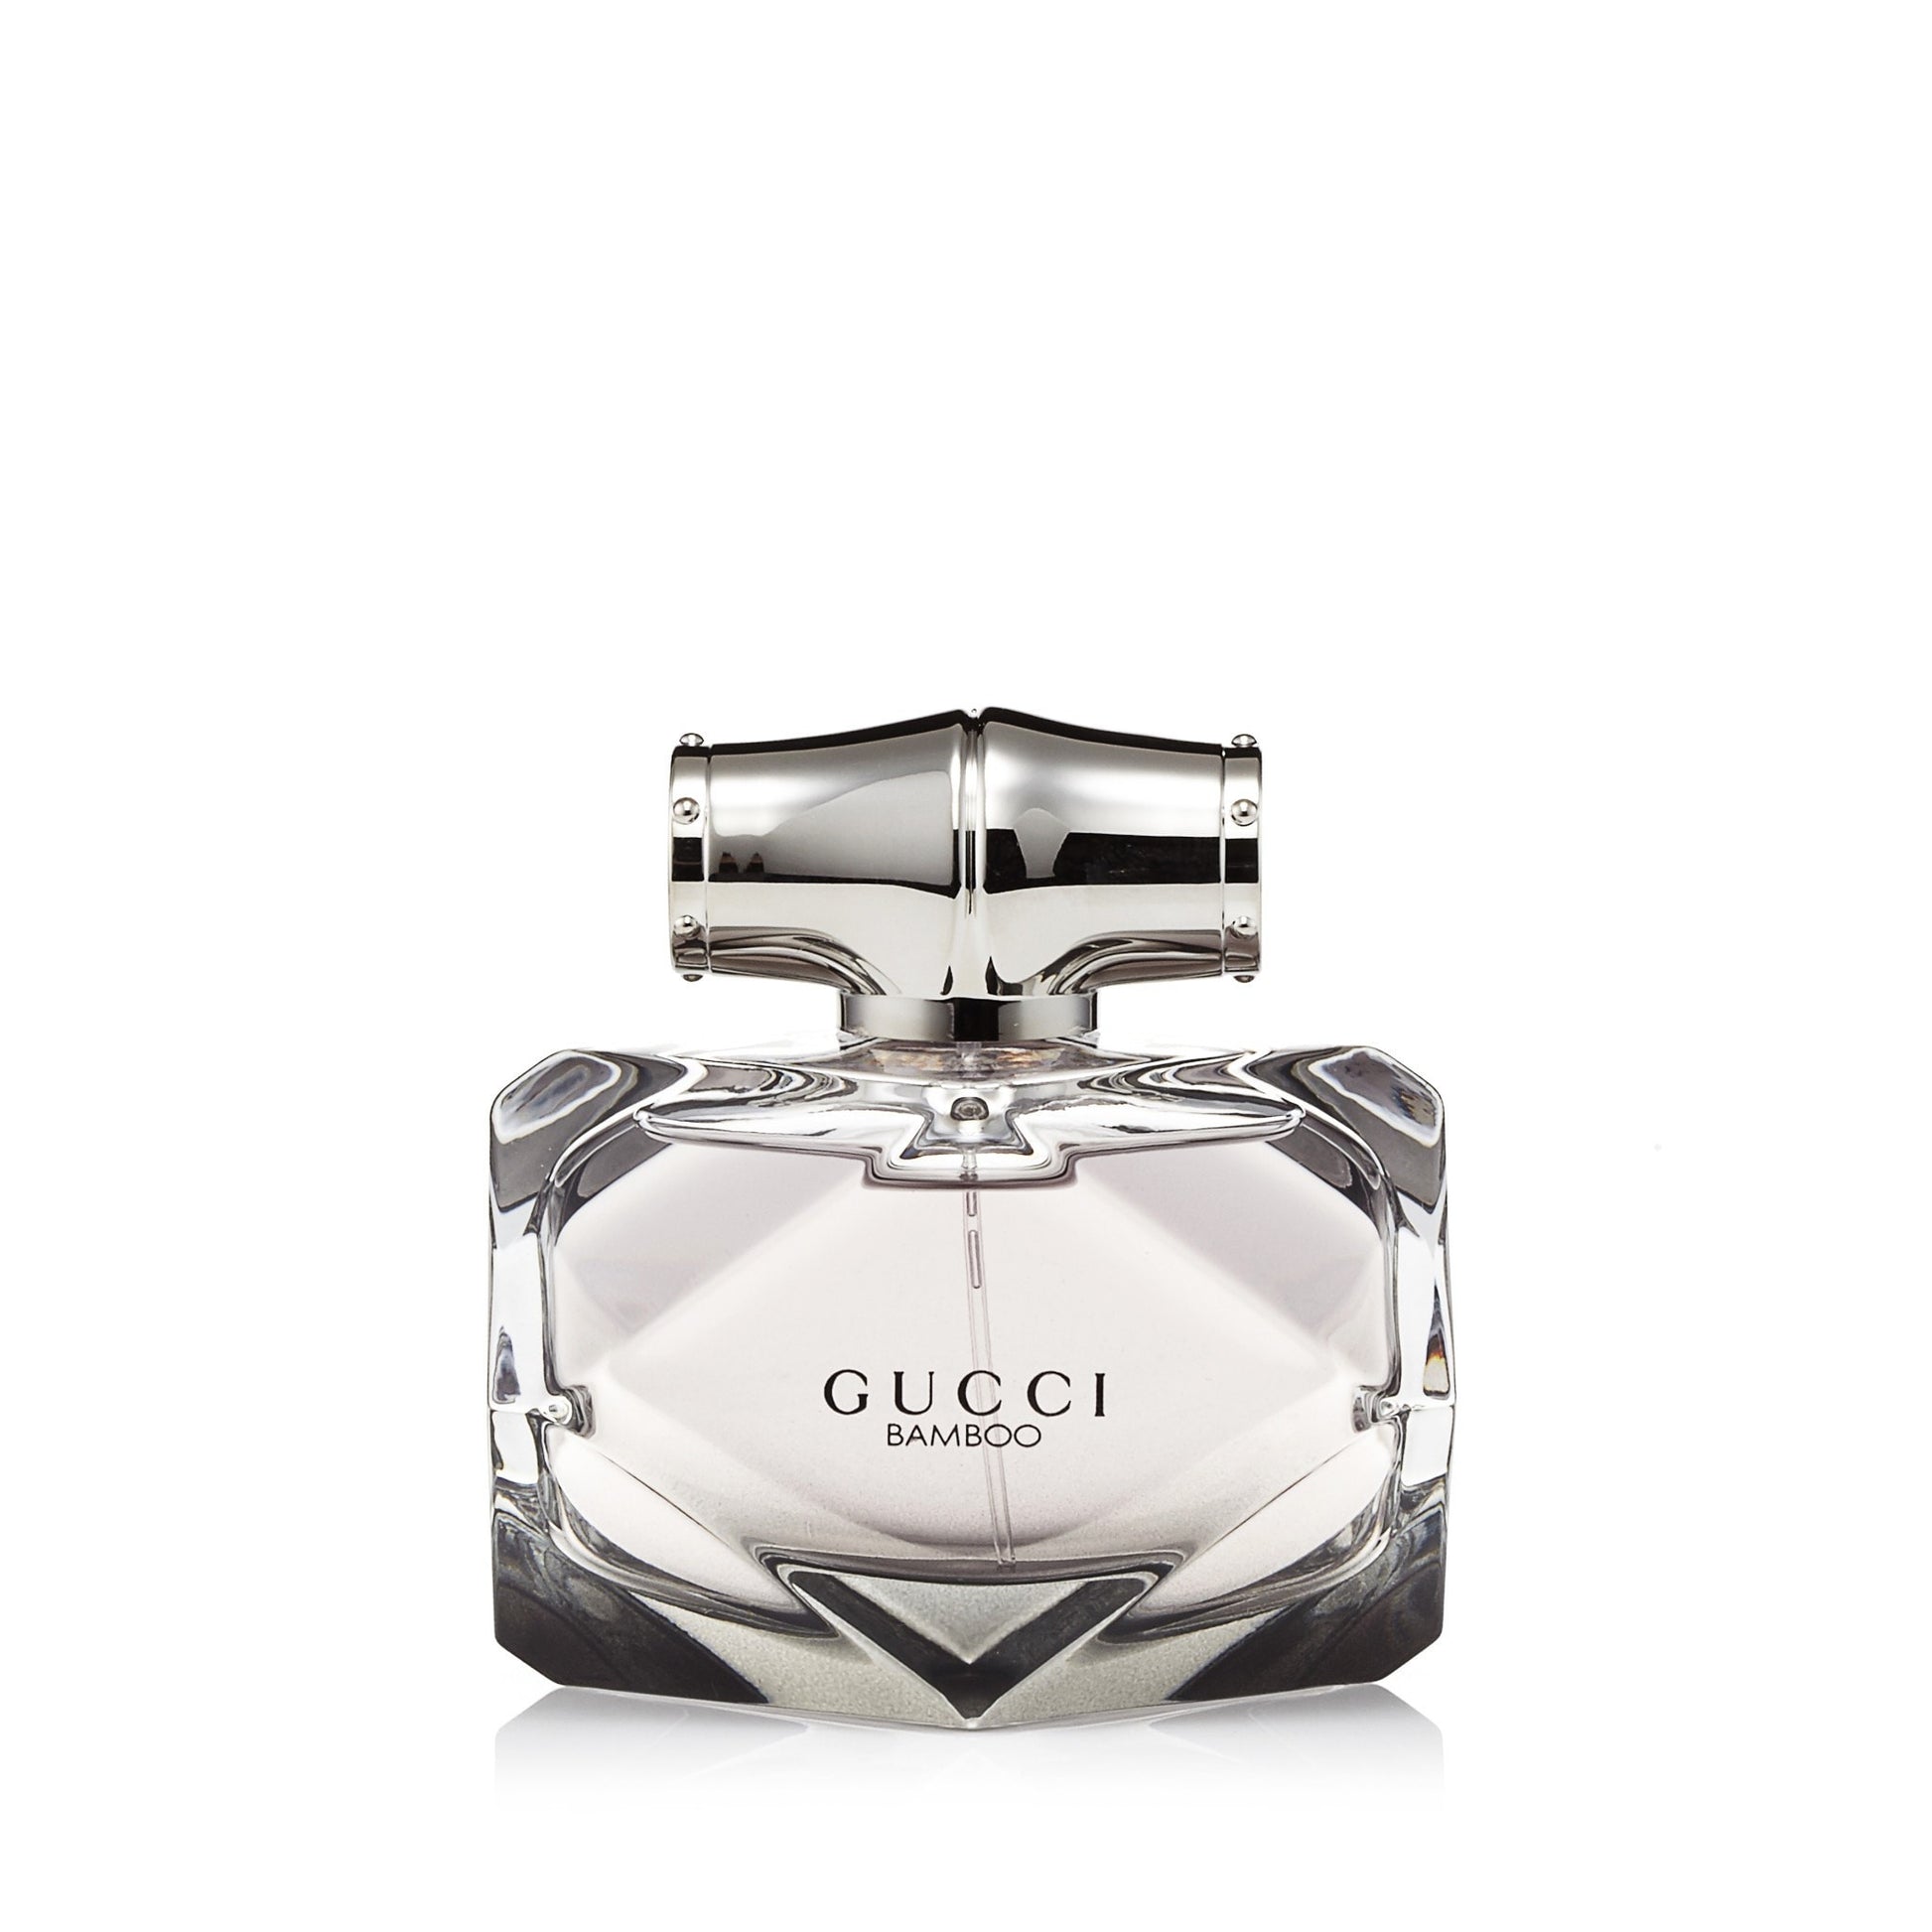  Bamboo Eau de Parfum Spray for Women by Gucci 2.5 oz. Click to open in modal